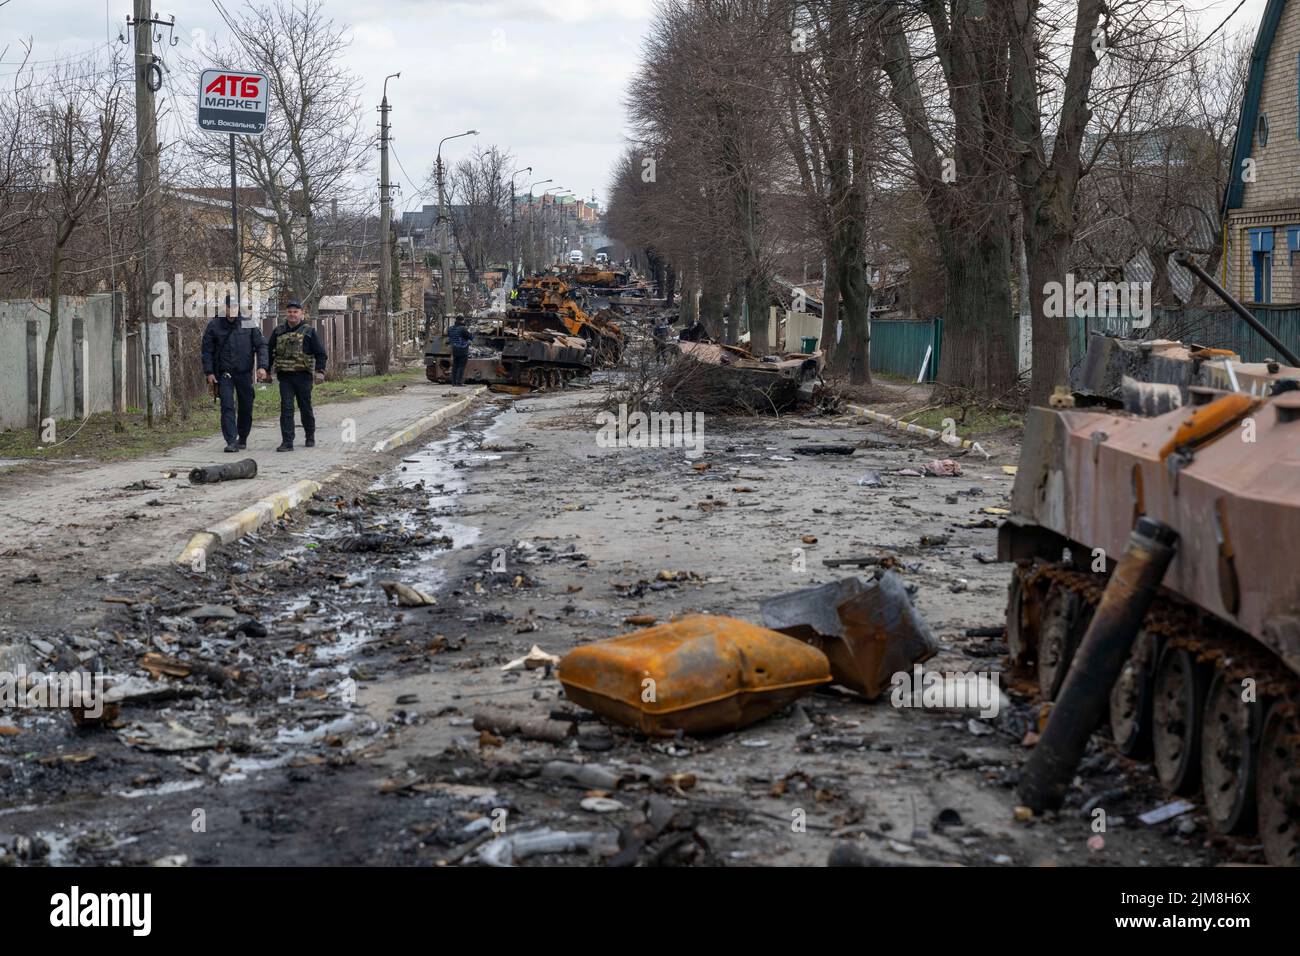 La photo montre la destruction dans la ville de Bucha près de Kiev qui a été occupée par les forces russes en février et mars Banque D'Images